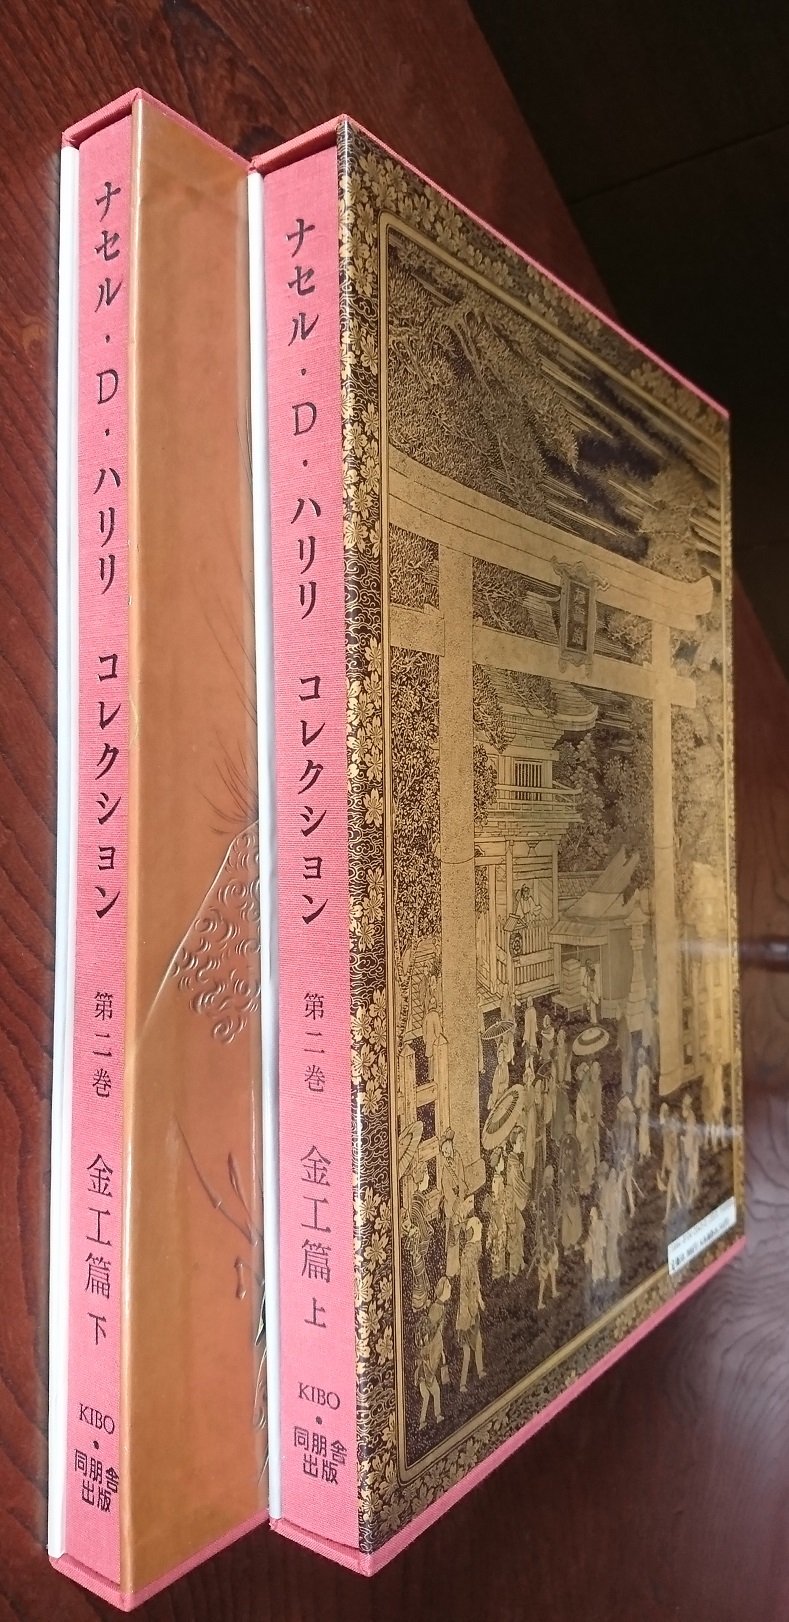 ナセル ・D・ハリリ コレクション 第五巻 陶芸篇 上下 海を渡った日本 